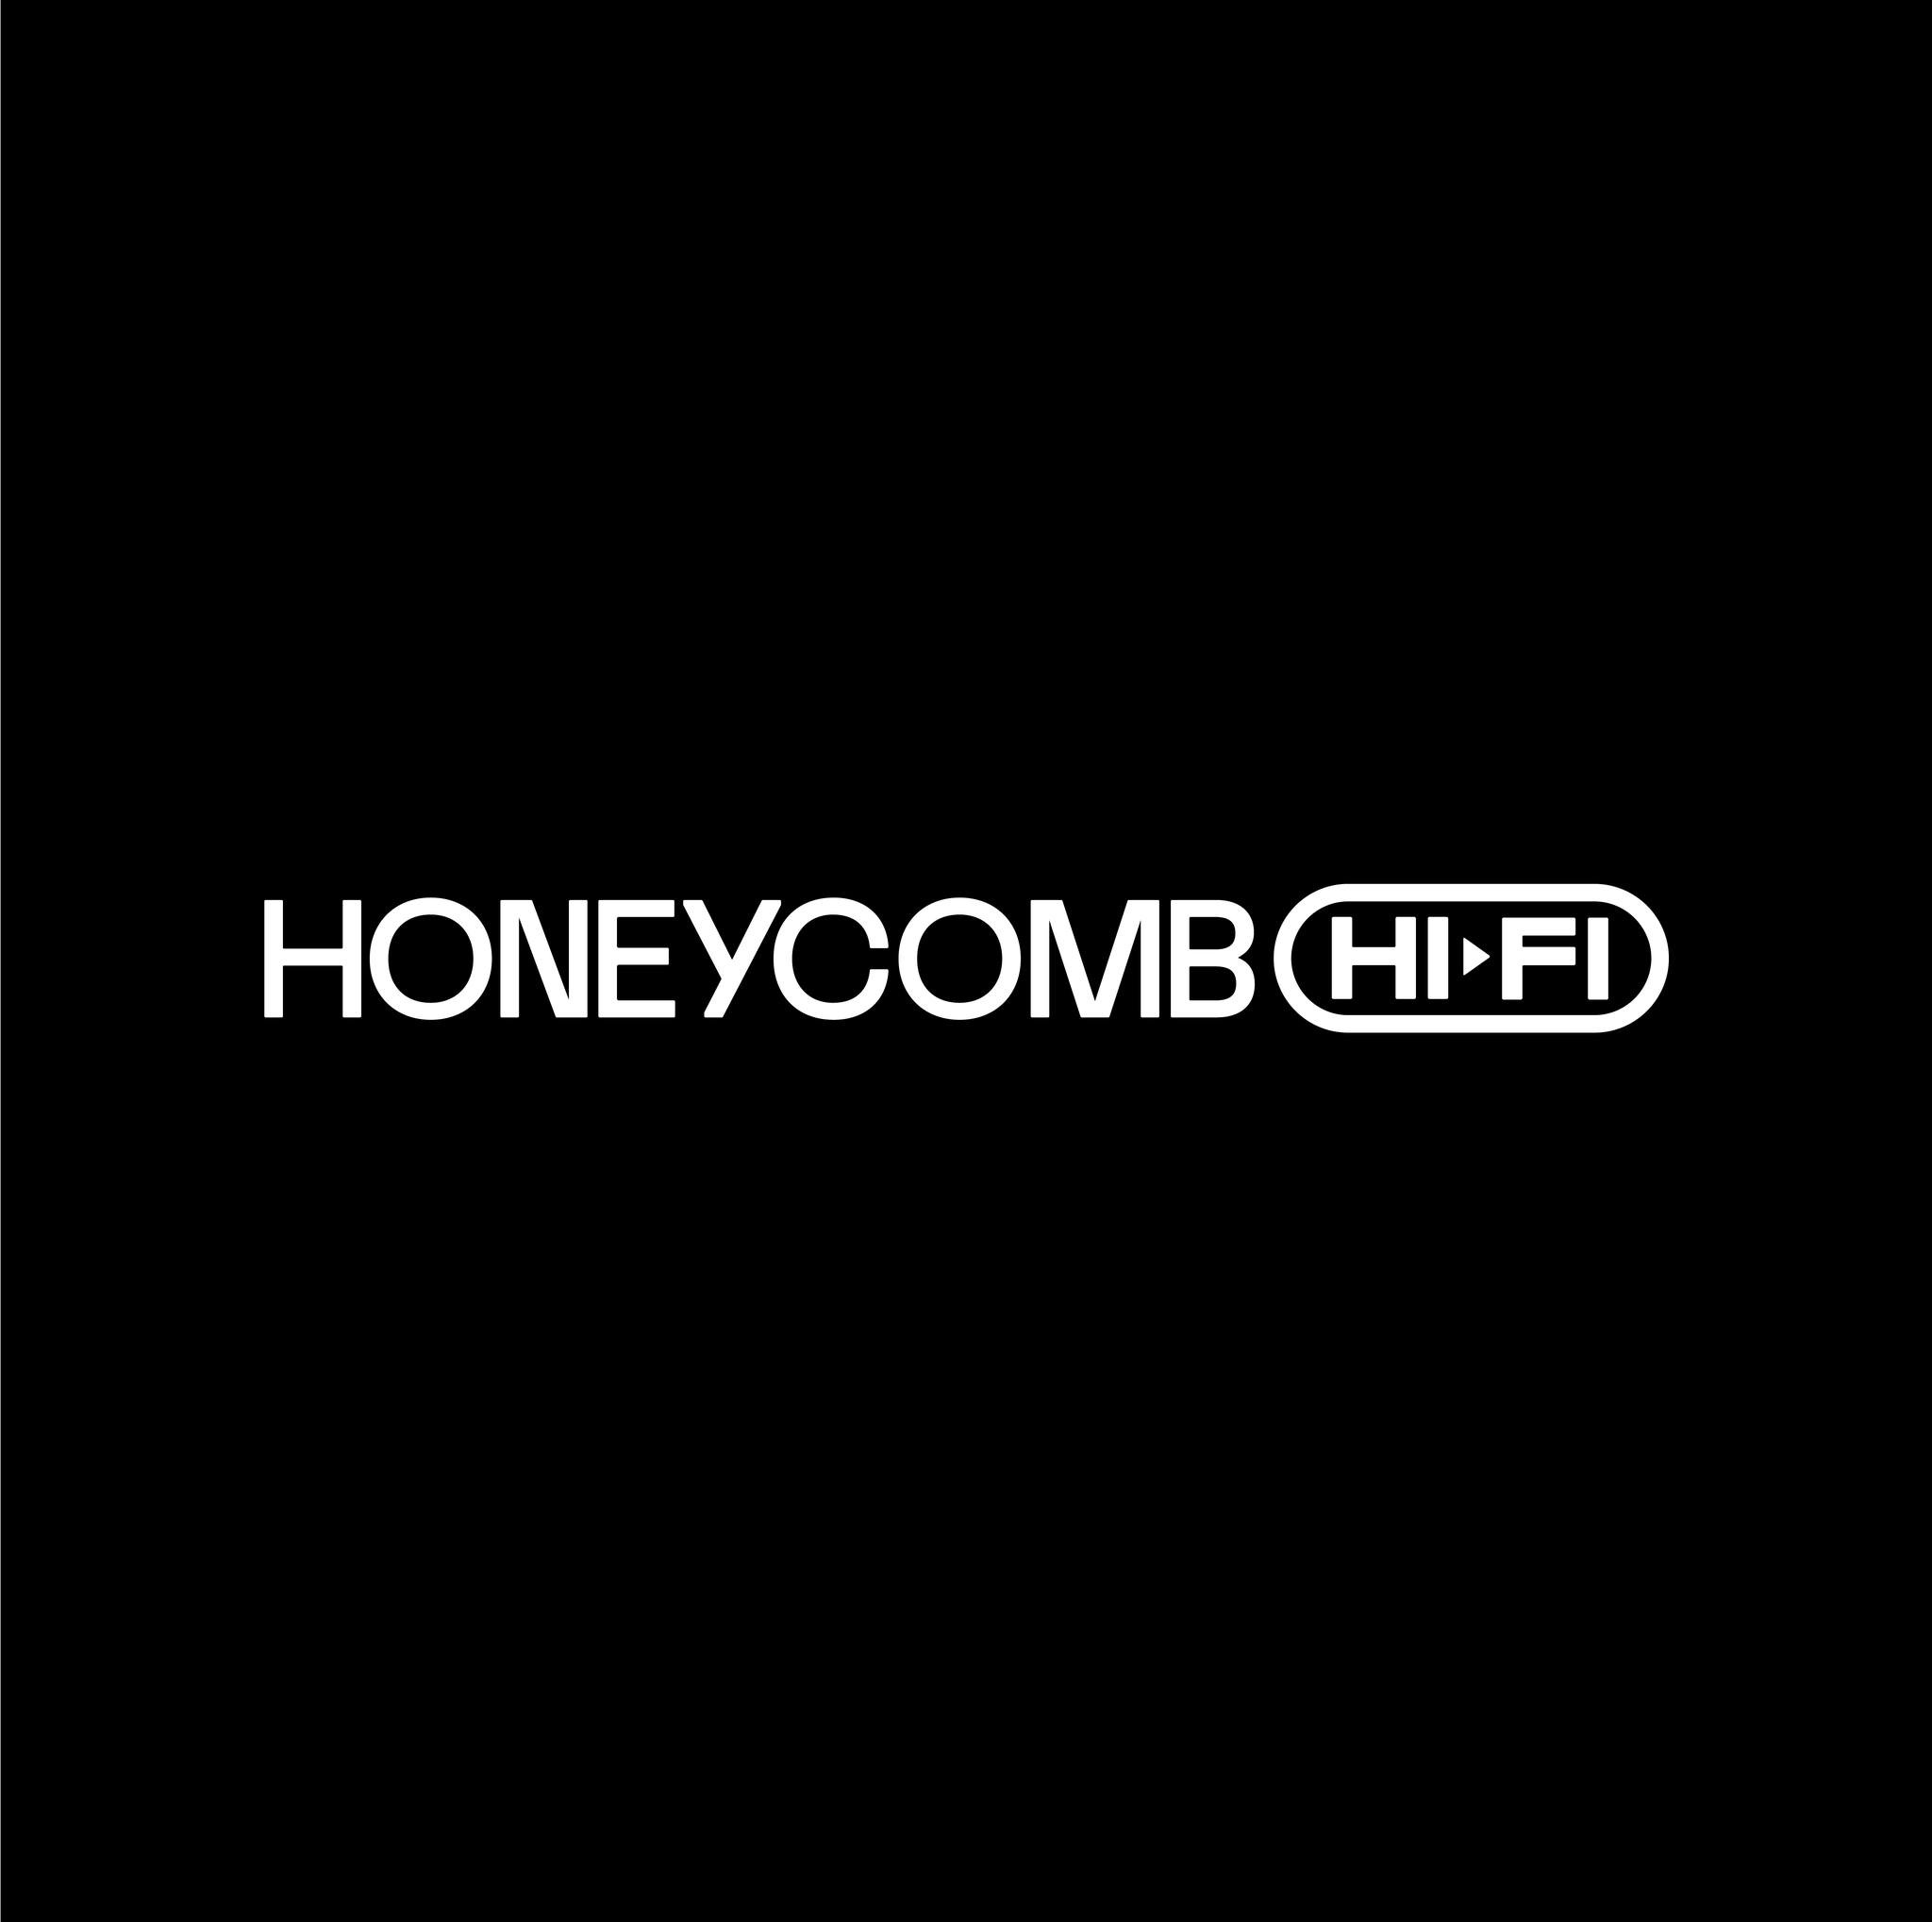 Honeycomb Hi-Fi 